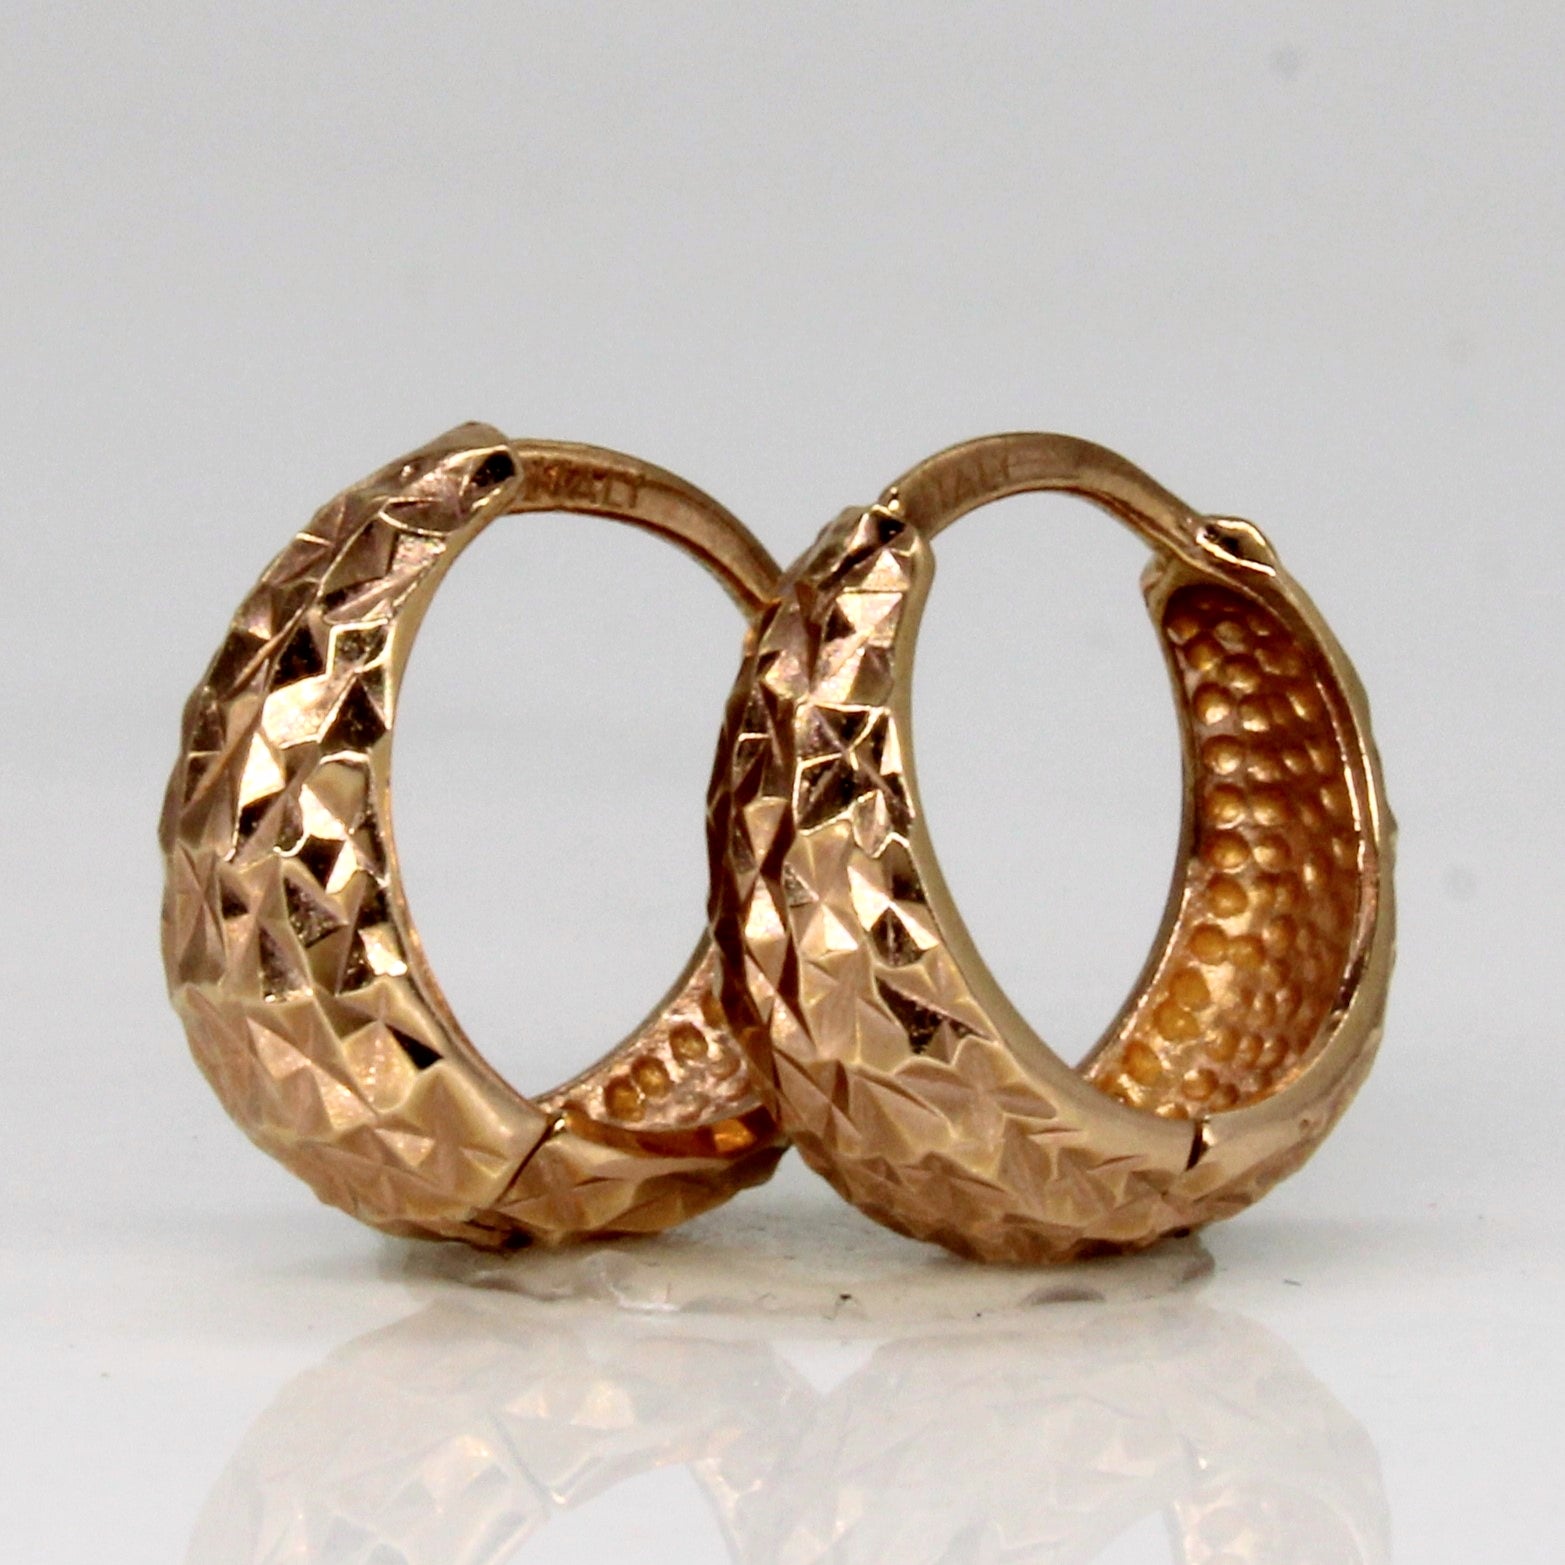 14k Rose Gold Hoop Earrings